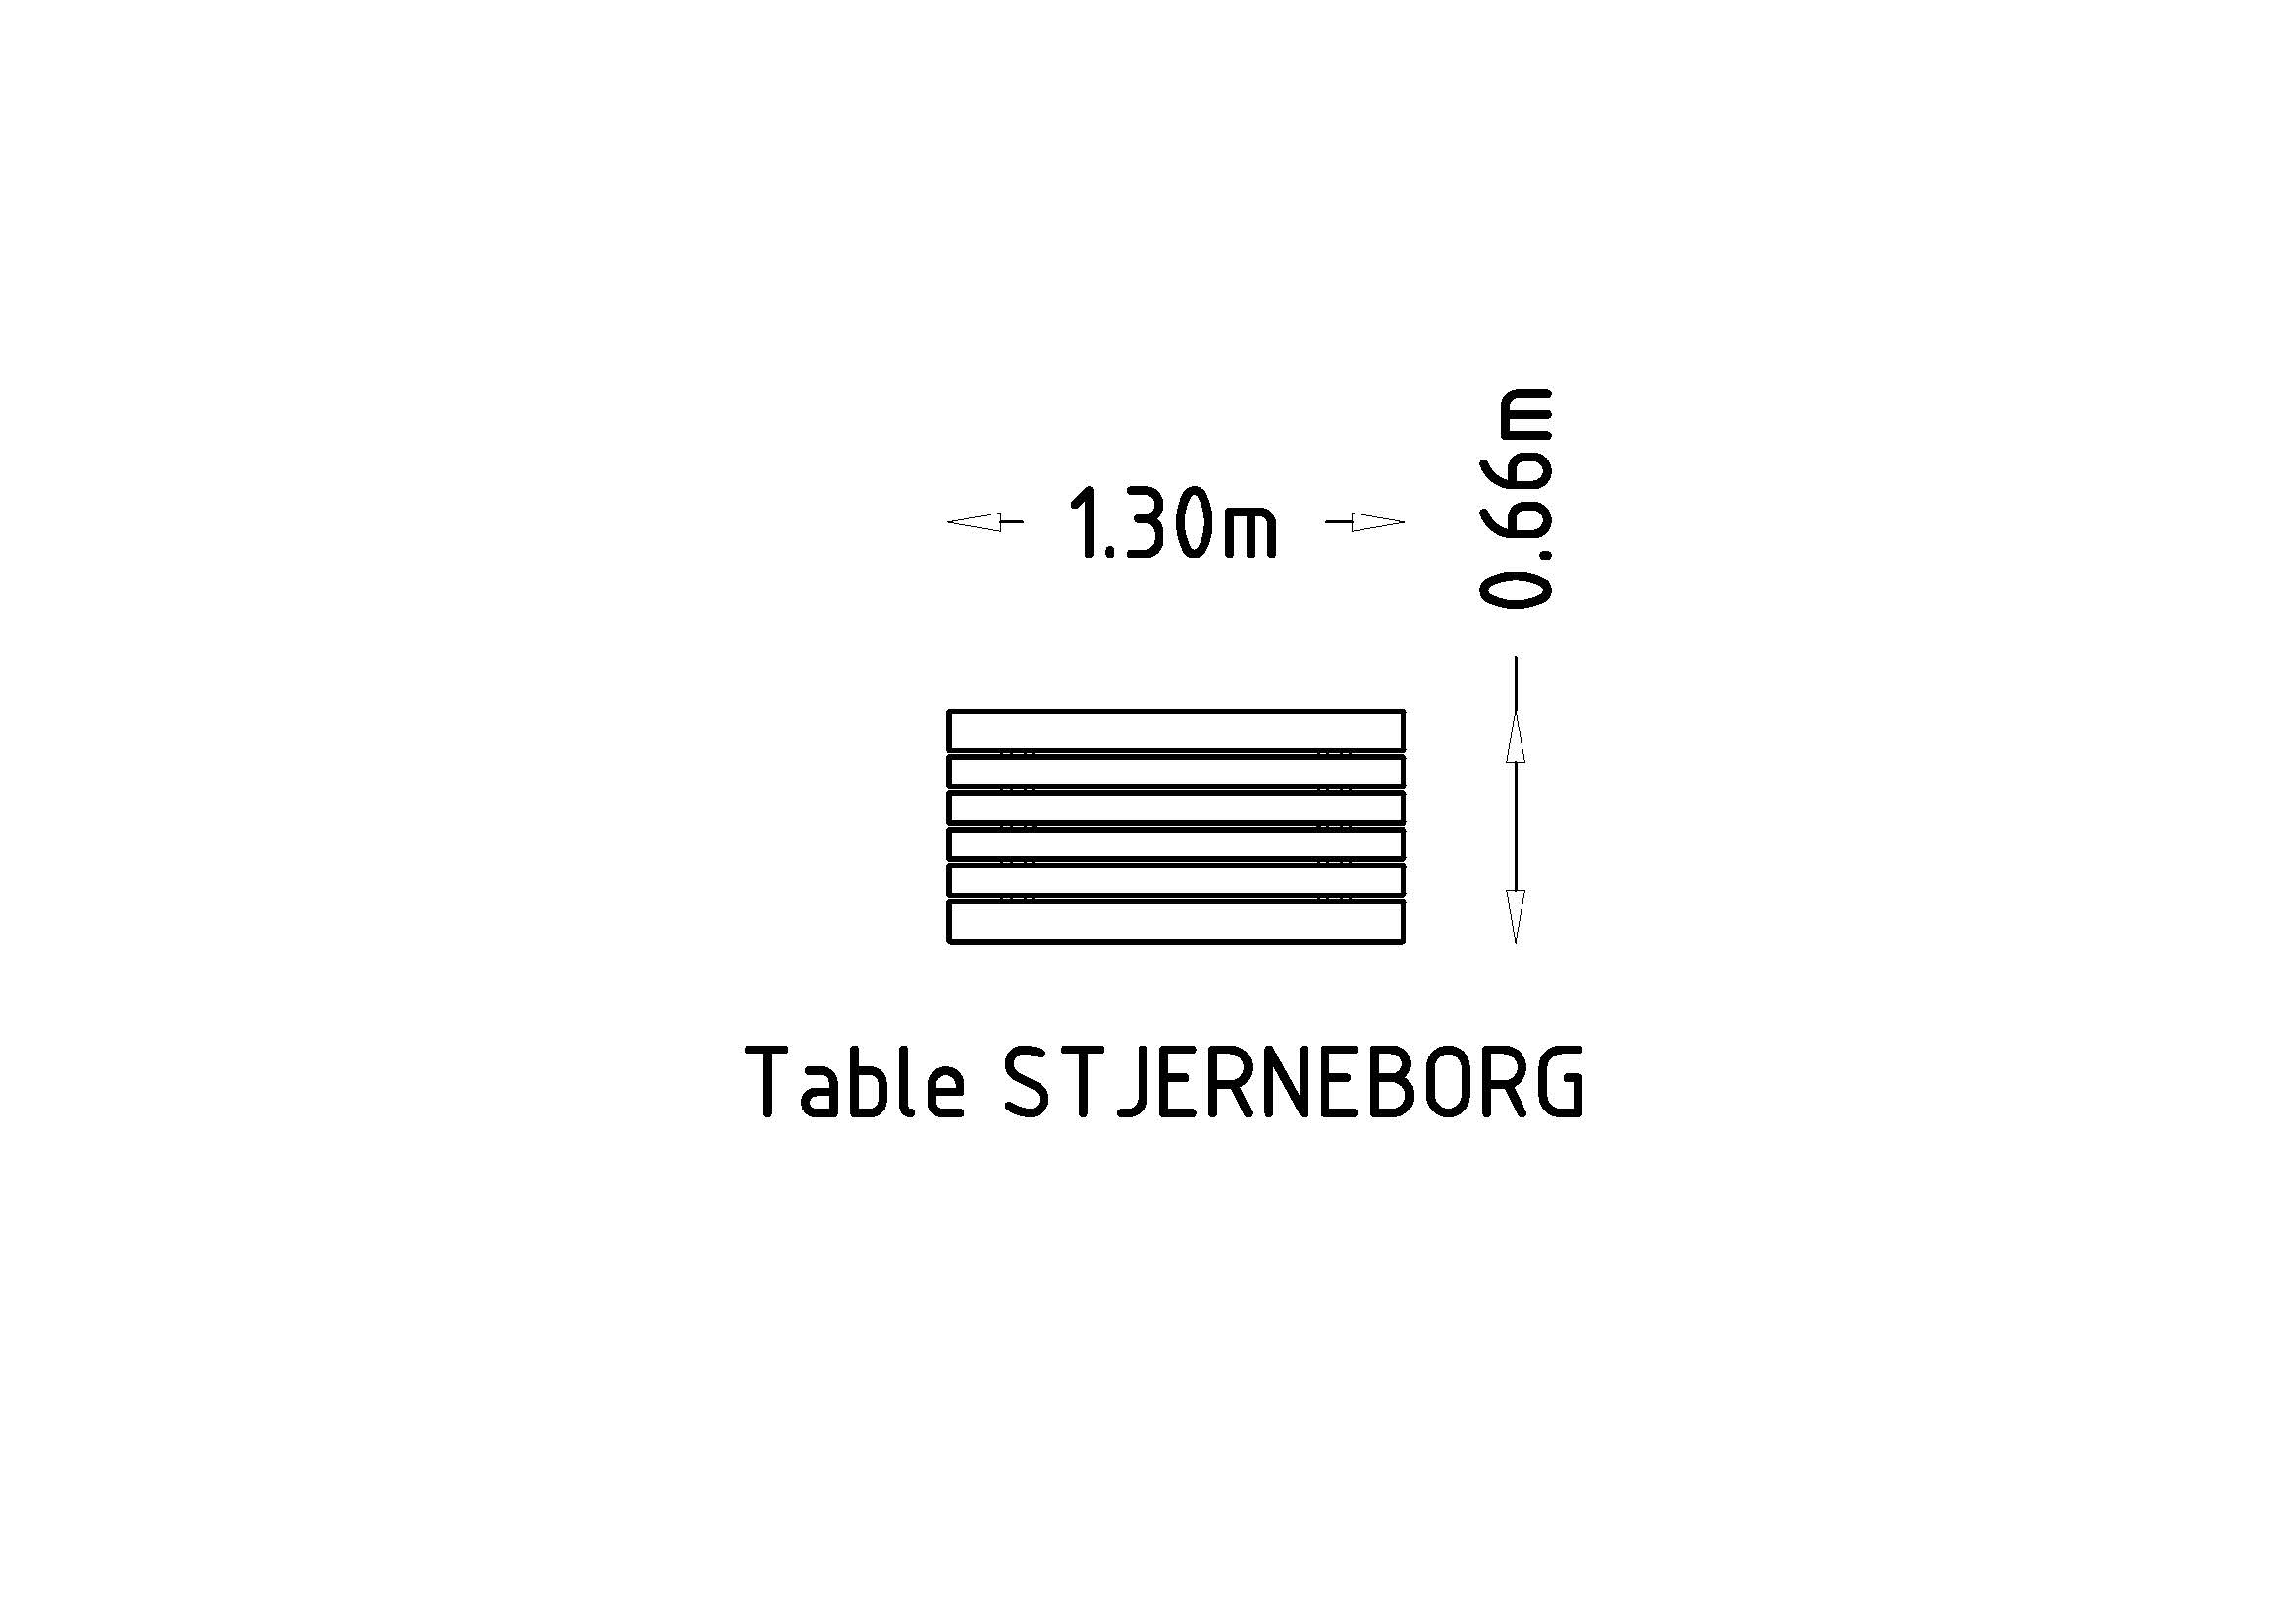 Taulukko Stjerneborg